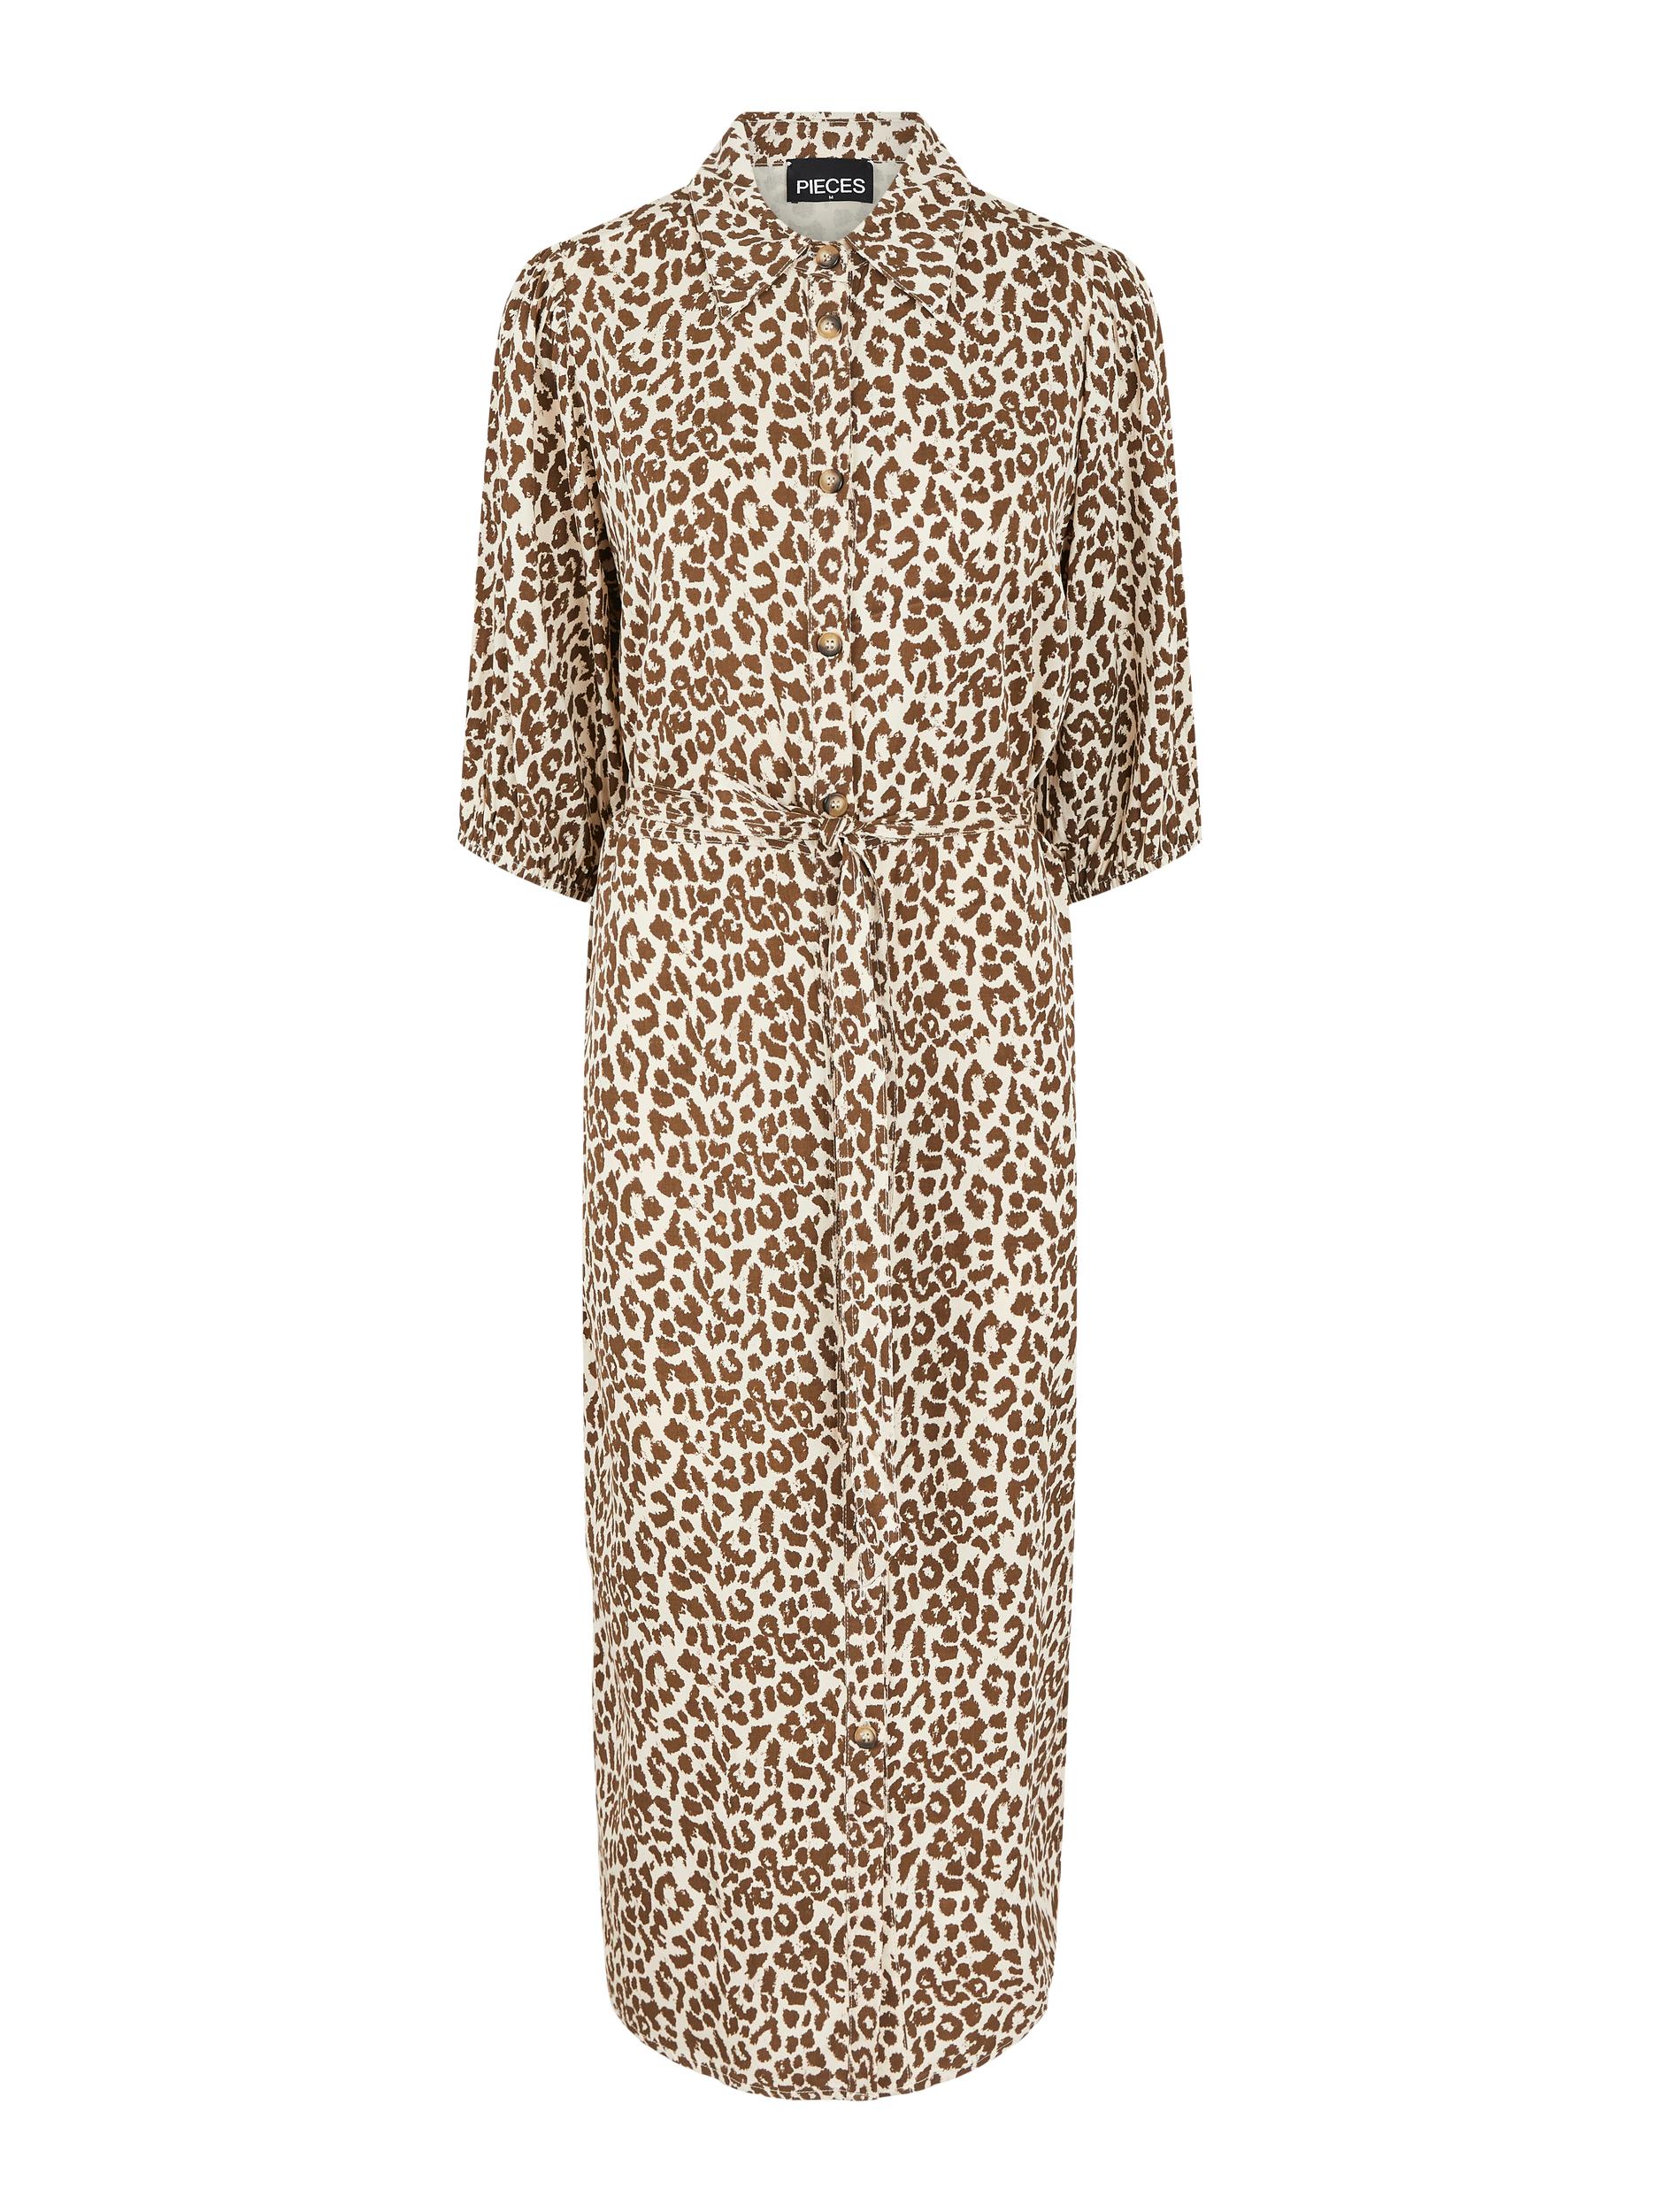 Sukienki Odzież PIECES Sukienka koszulowa Adua w kolorze Karmelowy, Beżowym 